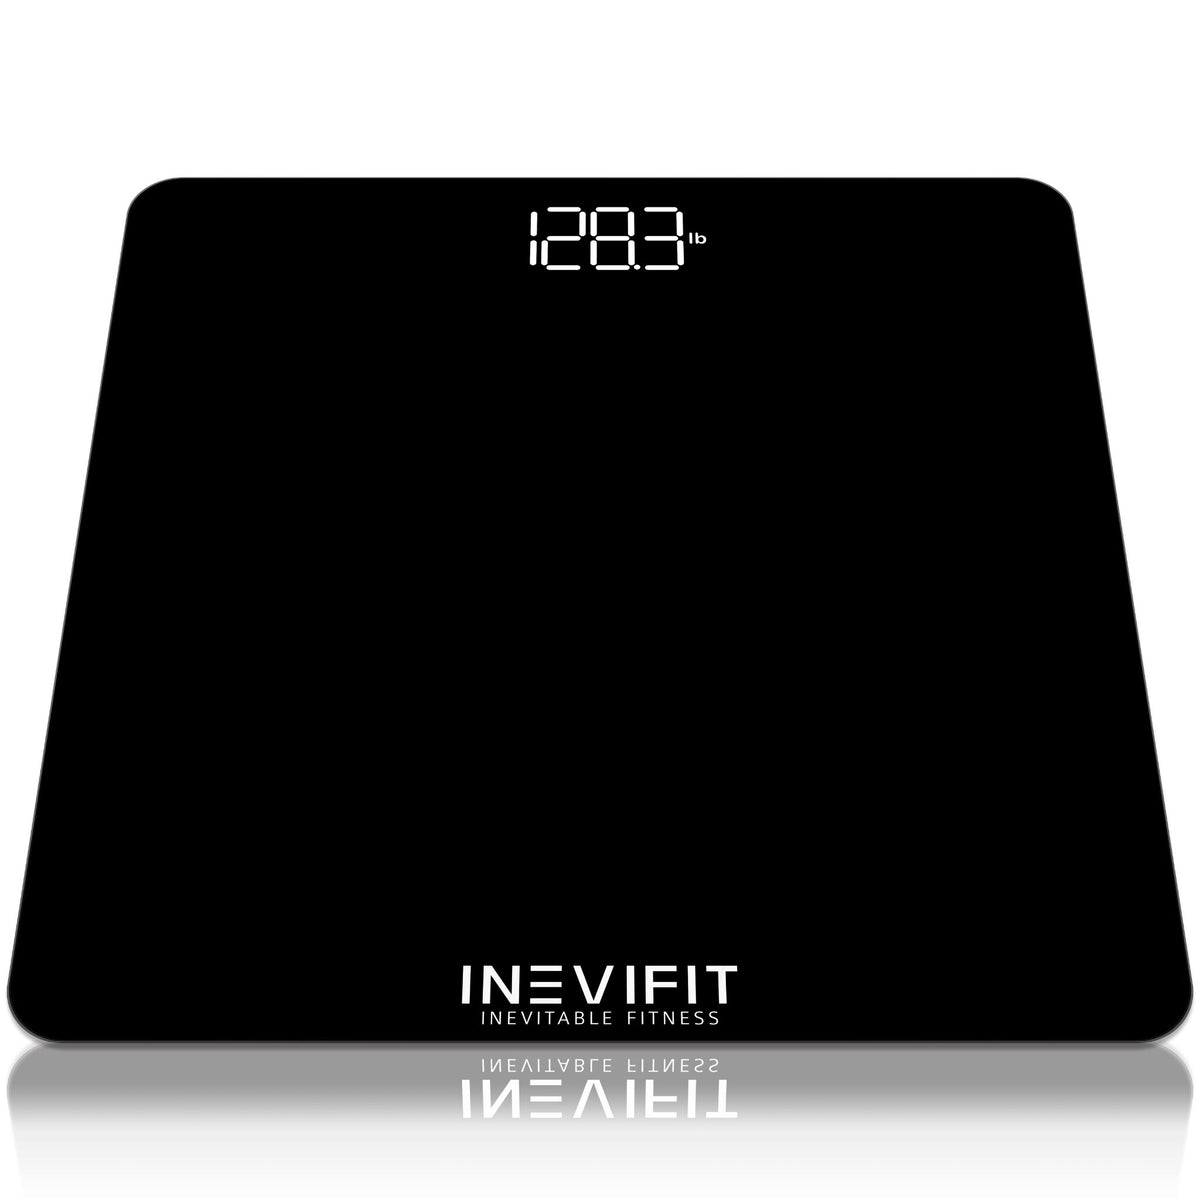 INEVIFIT Digital Body Analyzer Scale – Bodybuilding.com